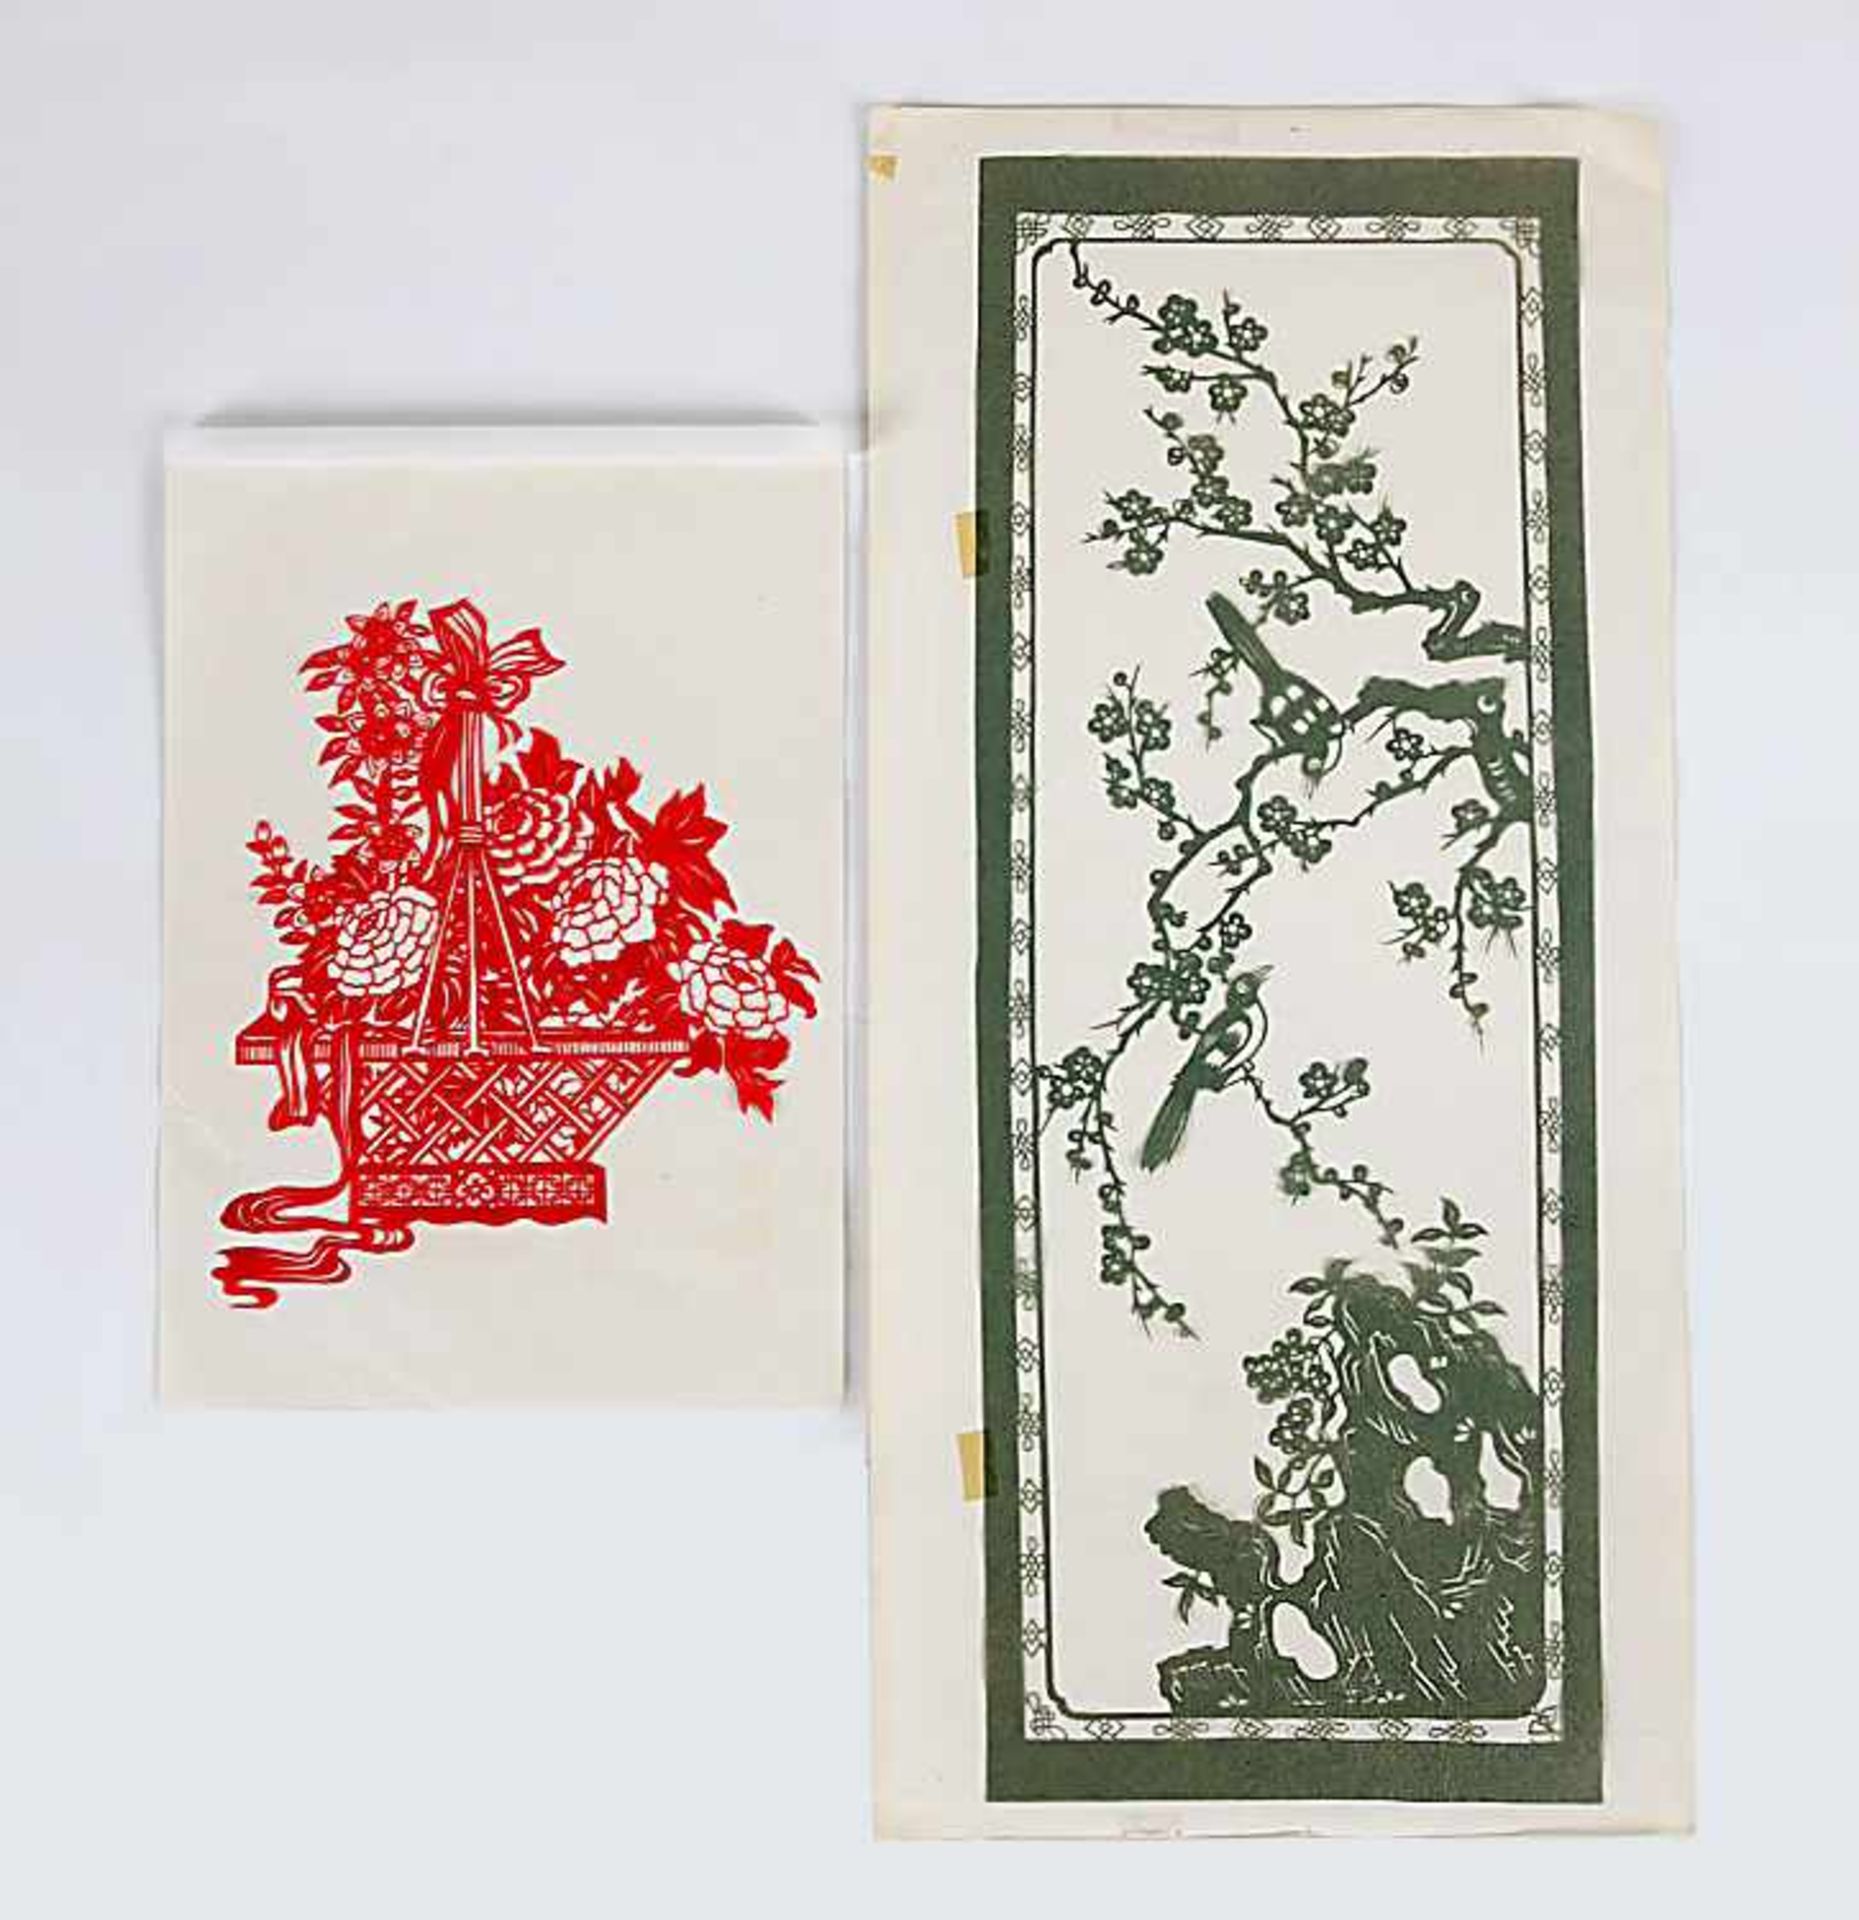 Zwei ScherenschnitteChina/Japan, 1. Hälfte 20. Jh.(?). 1) Blumenkorb in Rot. 16,4 x 13,8 cm. 2) Zwei